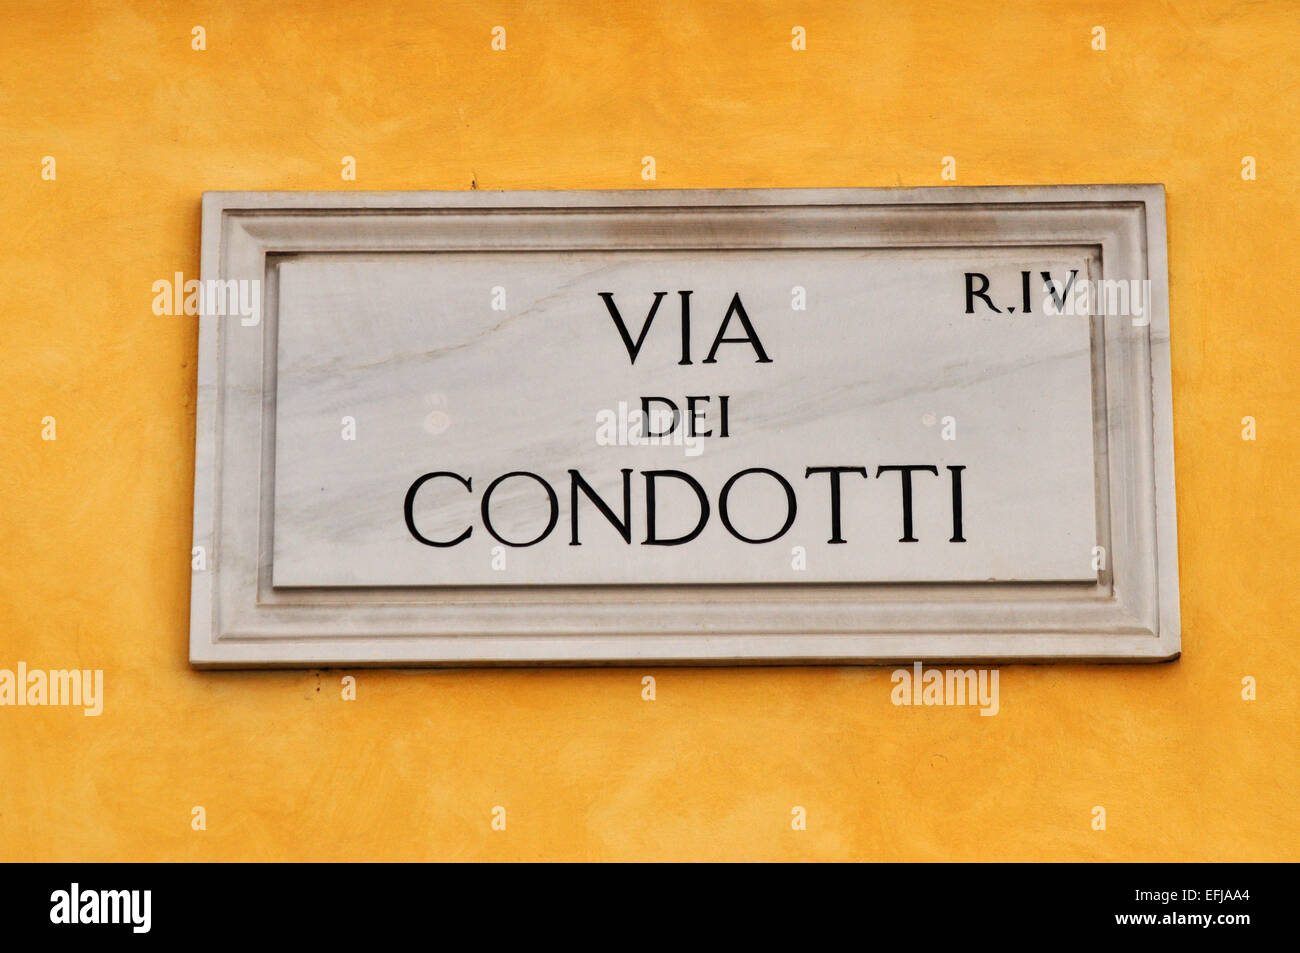 Segno sulla parete gialla della vecchia strada famosa Via dei Condotti - occupato e di moda street - Roma, Italia Foto Stock